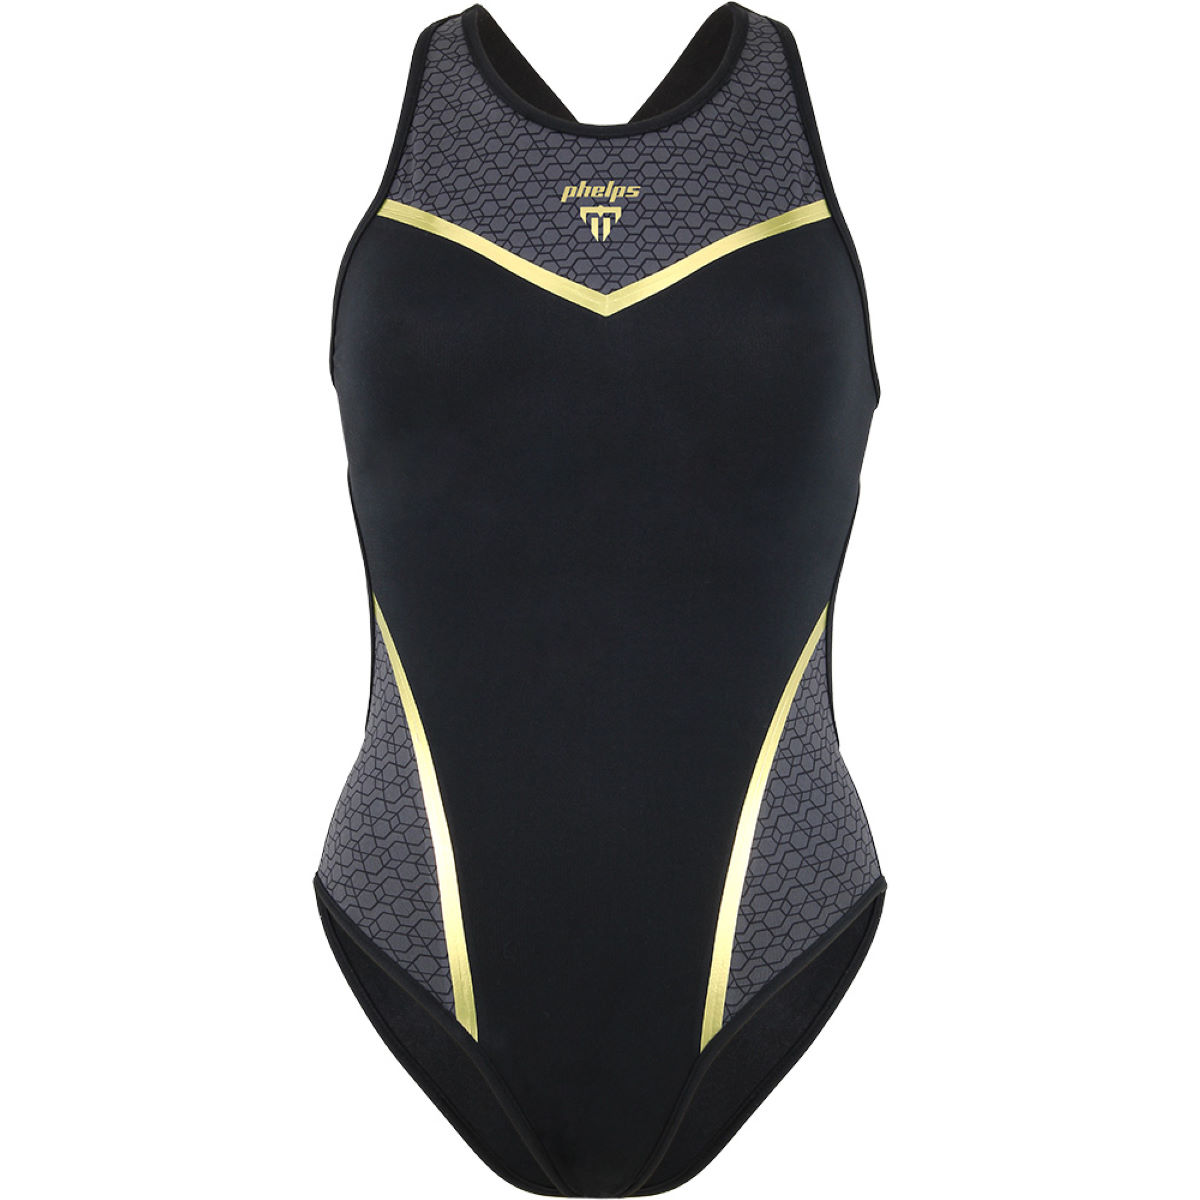 Phelps Women's Vela Swimsuit - Bañadores cortos